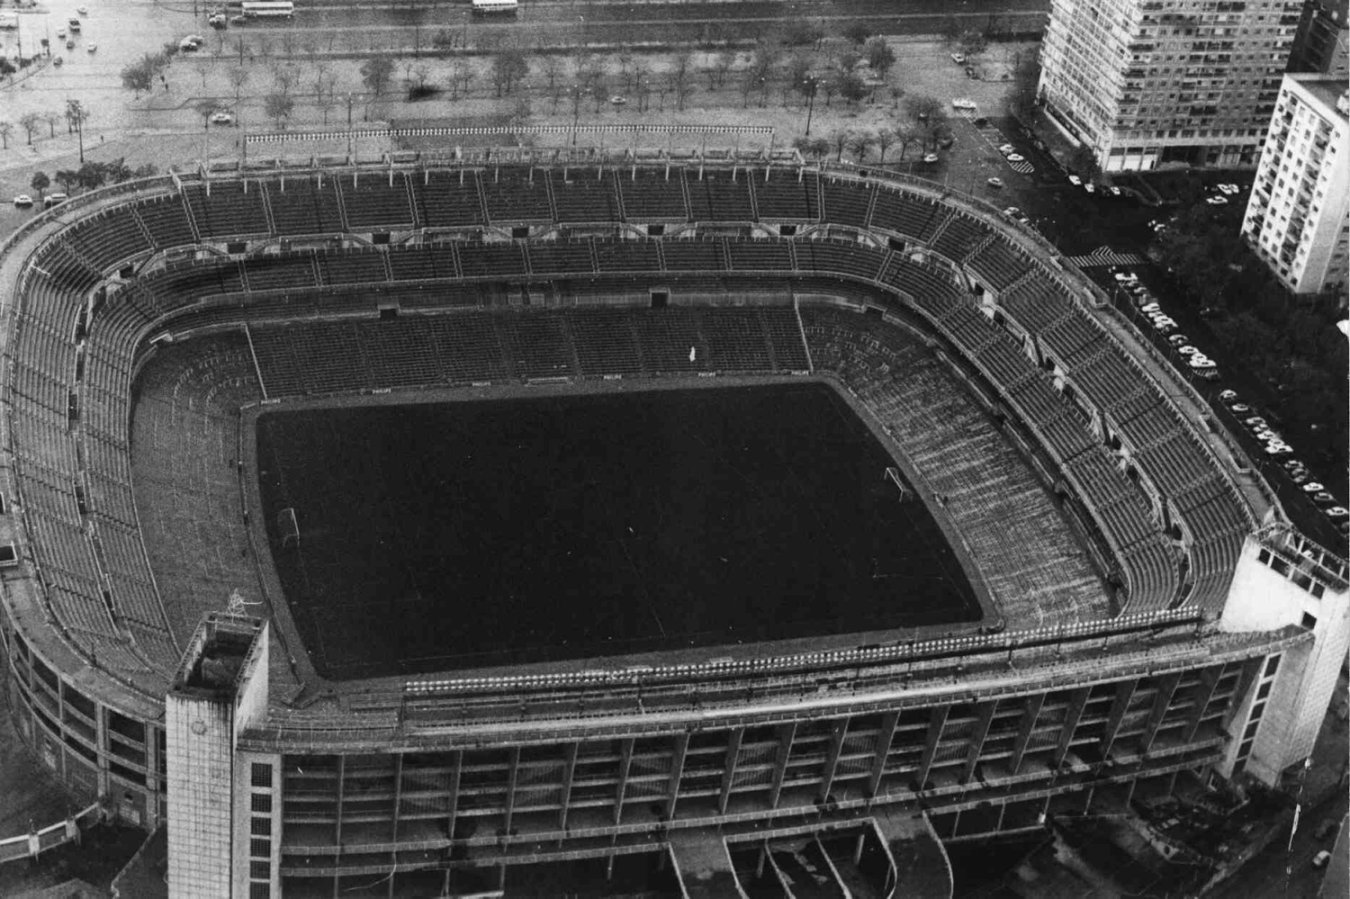 En marzo de 1957 el estadio tuvo iluminación en las gradas y accesos. El Real Madrid ya podía jugar de noche. Para hacerlo oficial se jugó un partido amistoso contra el Sport do Club Recife (campeón brasileño) el 18 de mayo de 1957.